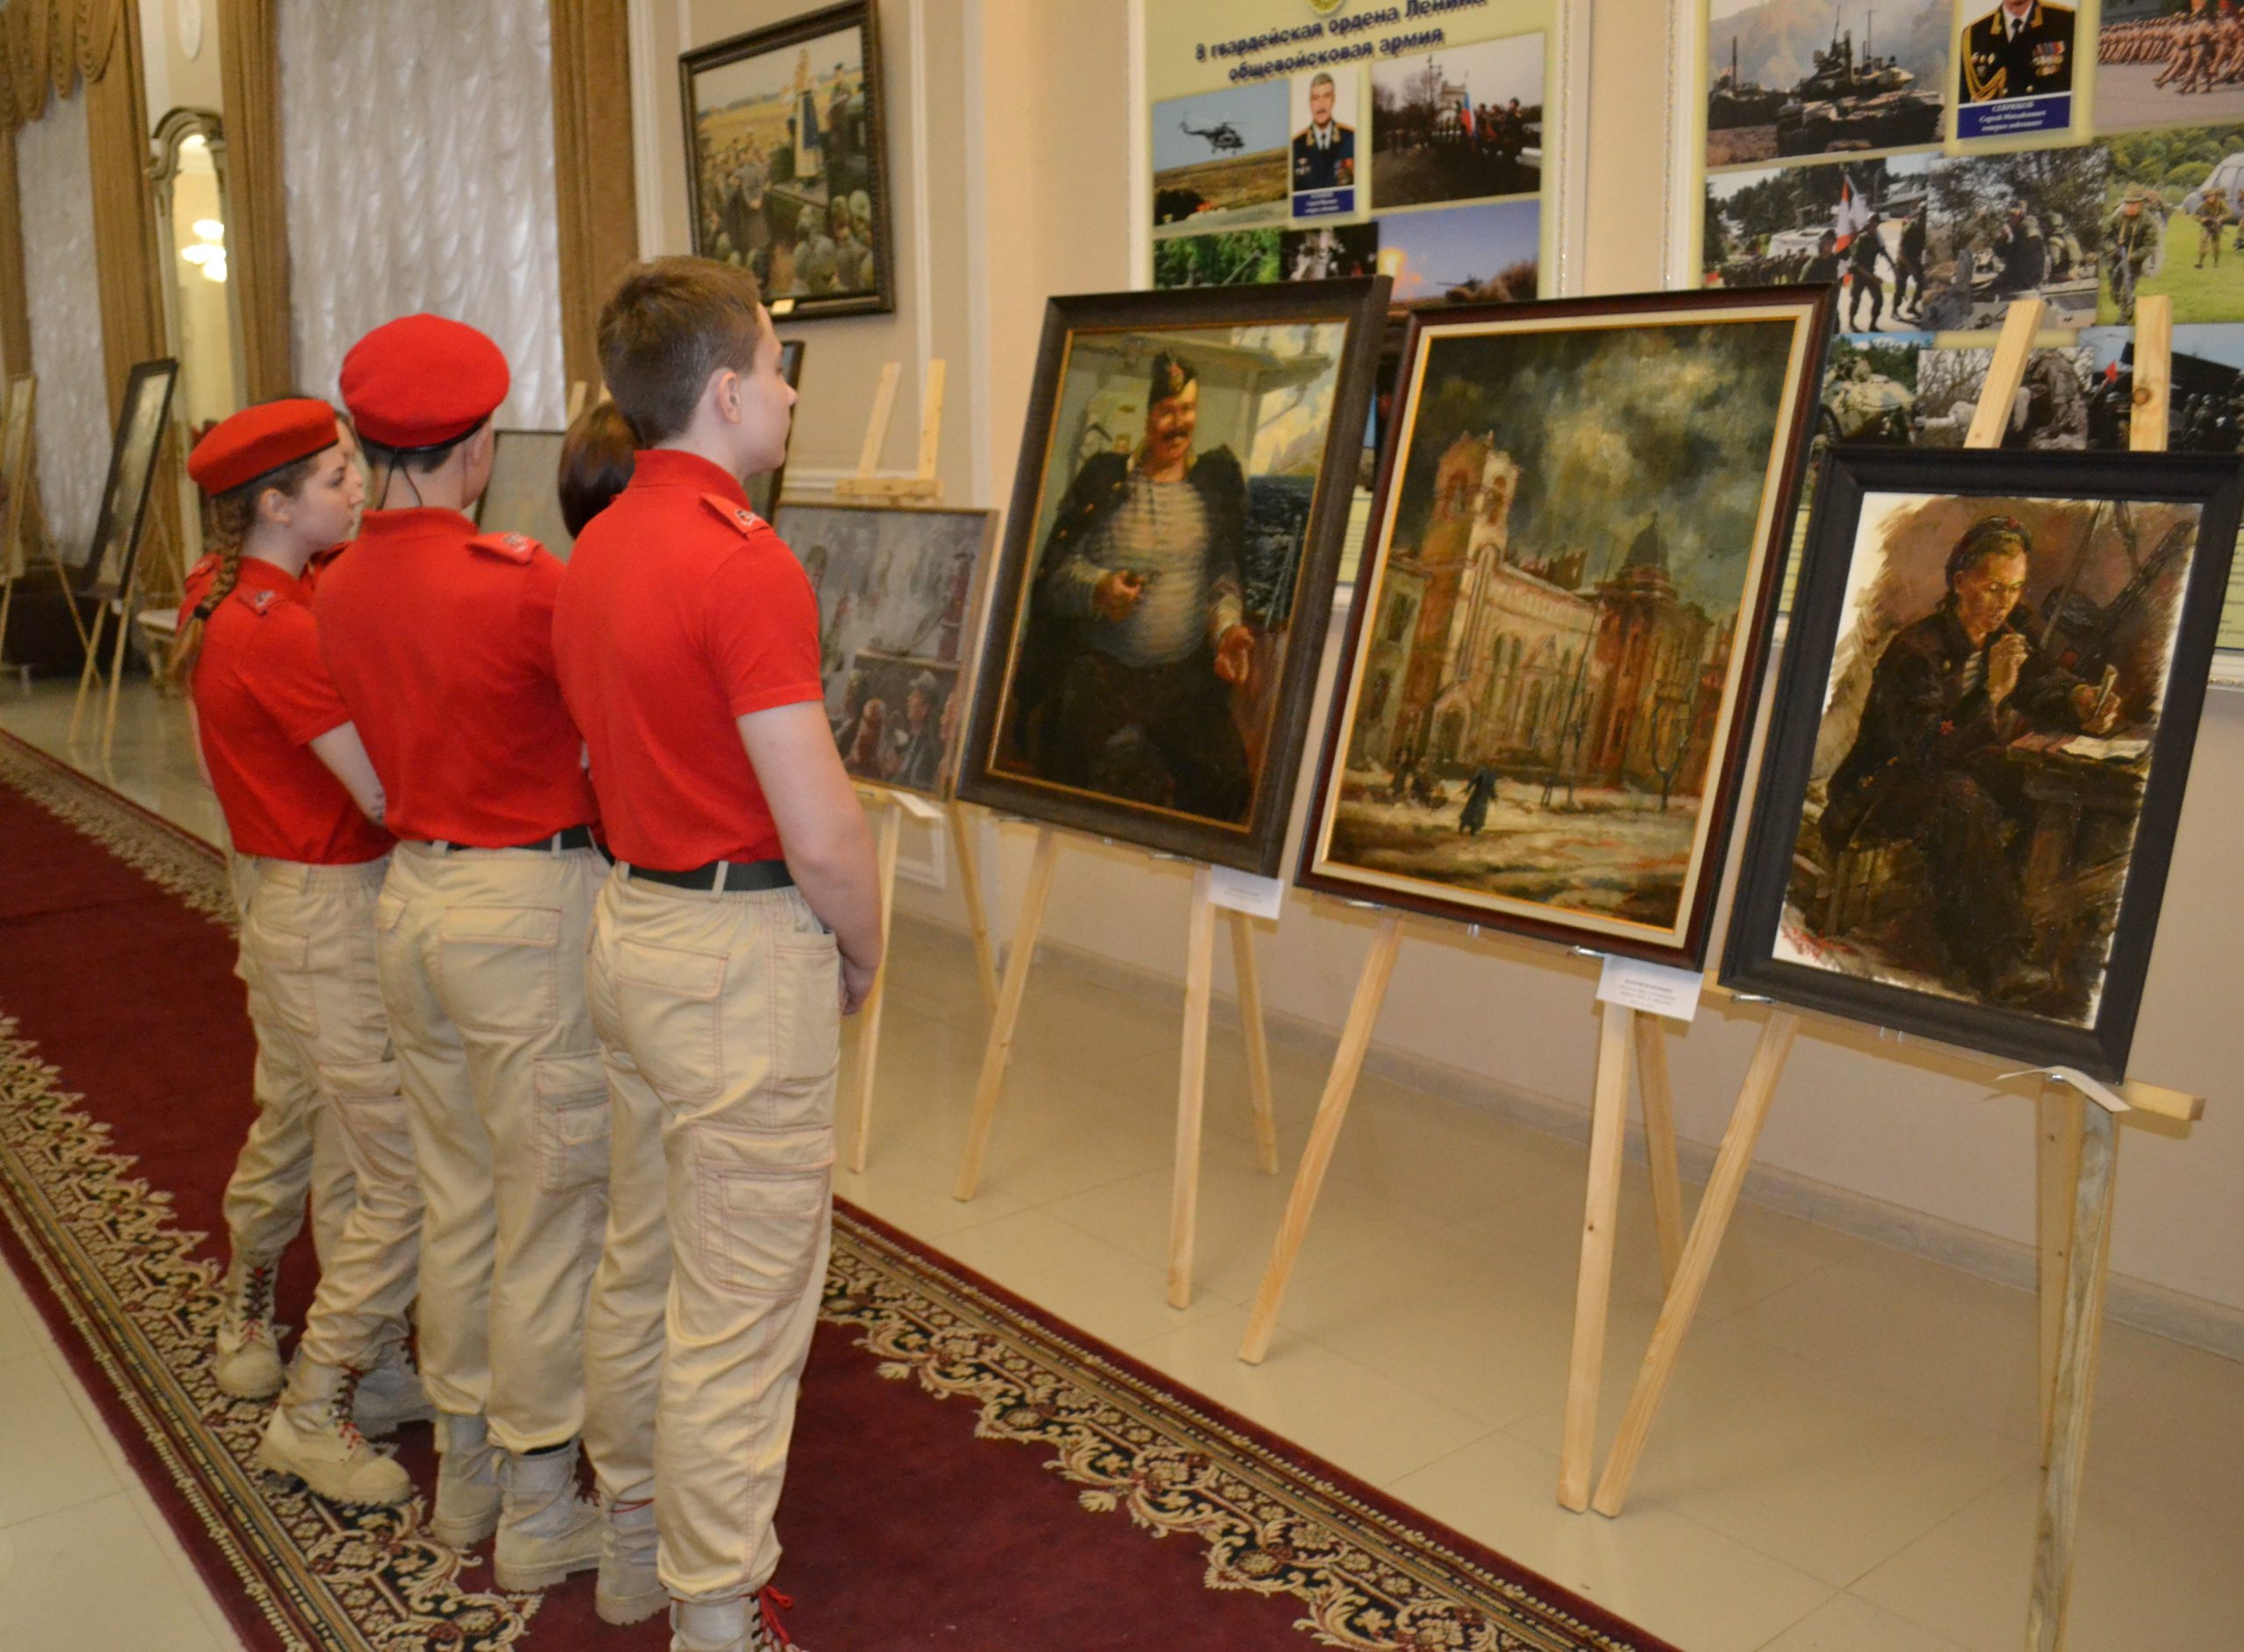 Вы сейчас просматриваете Художественная выставка авторских работ военных художников Рафаэля Лукьянова и Валерия Величкевича.